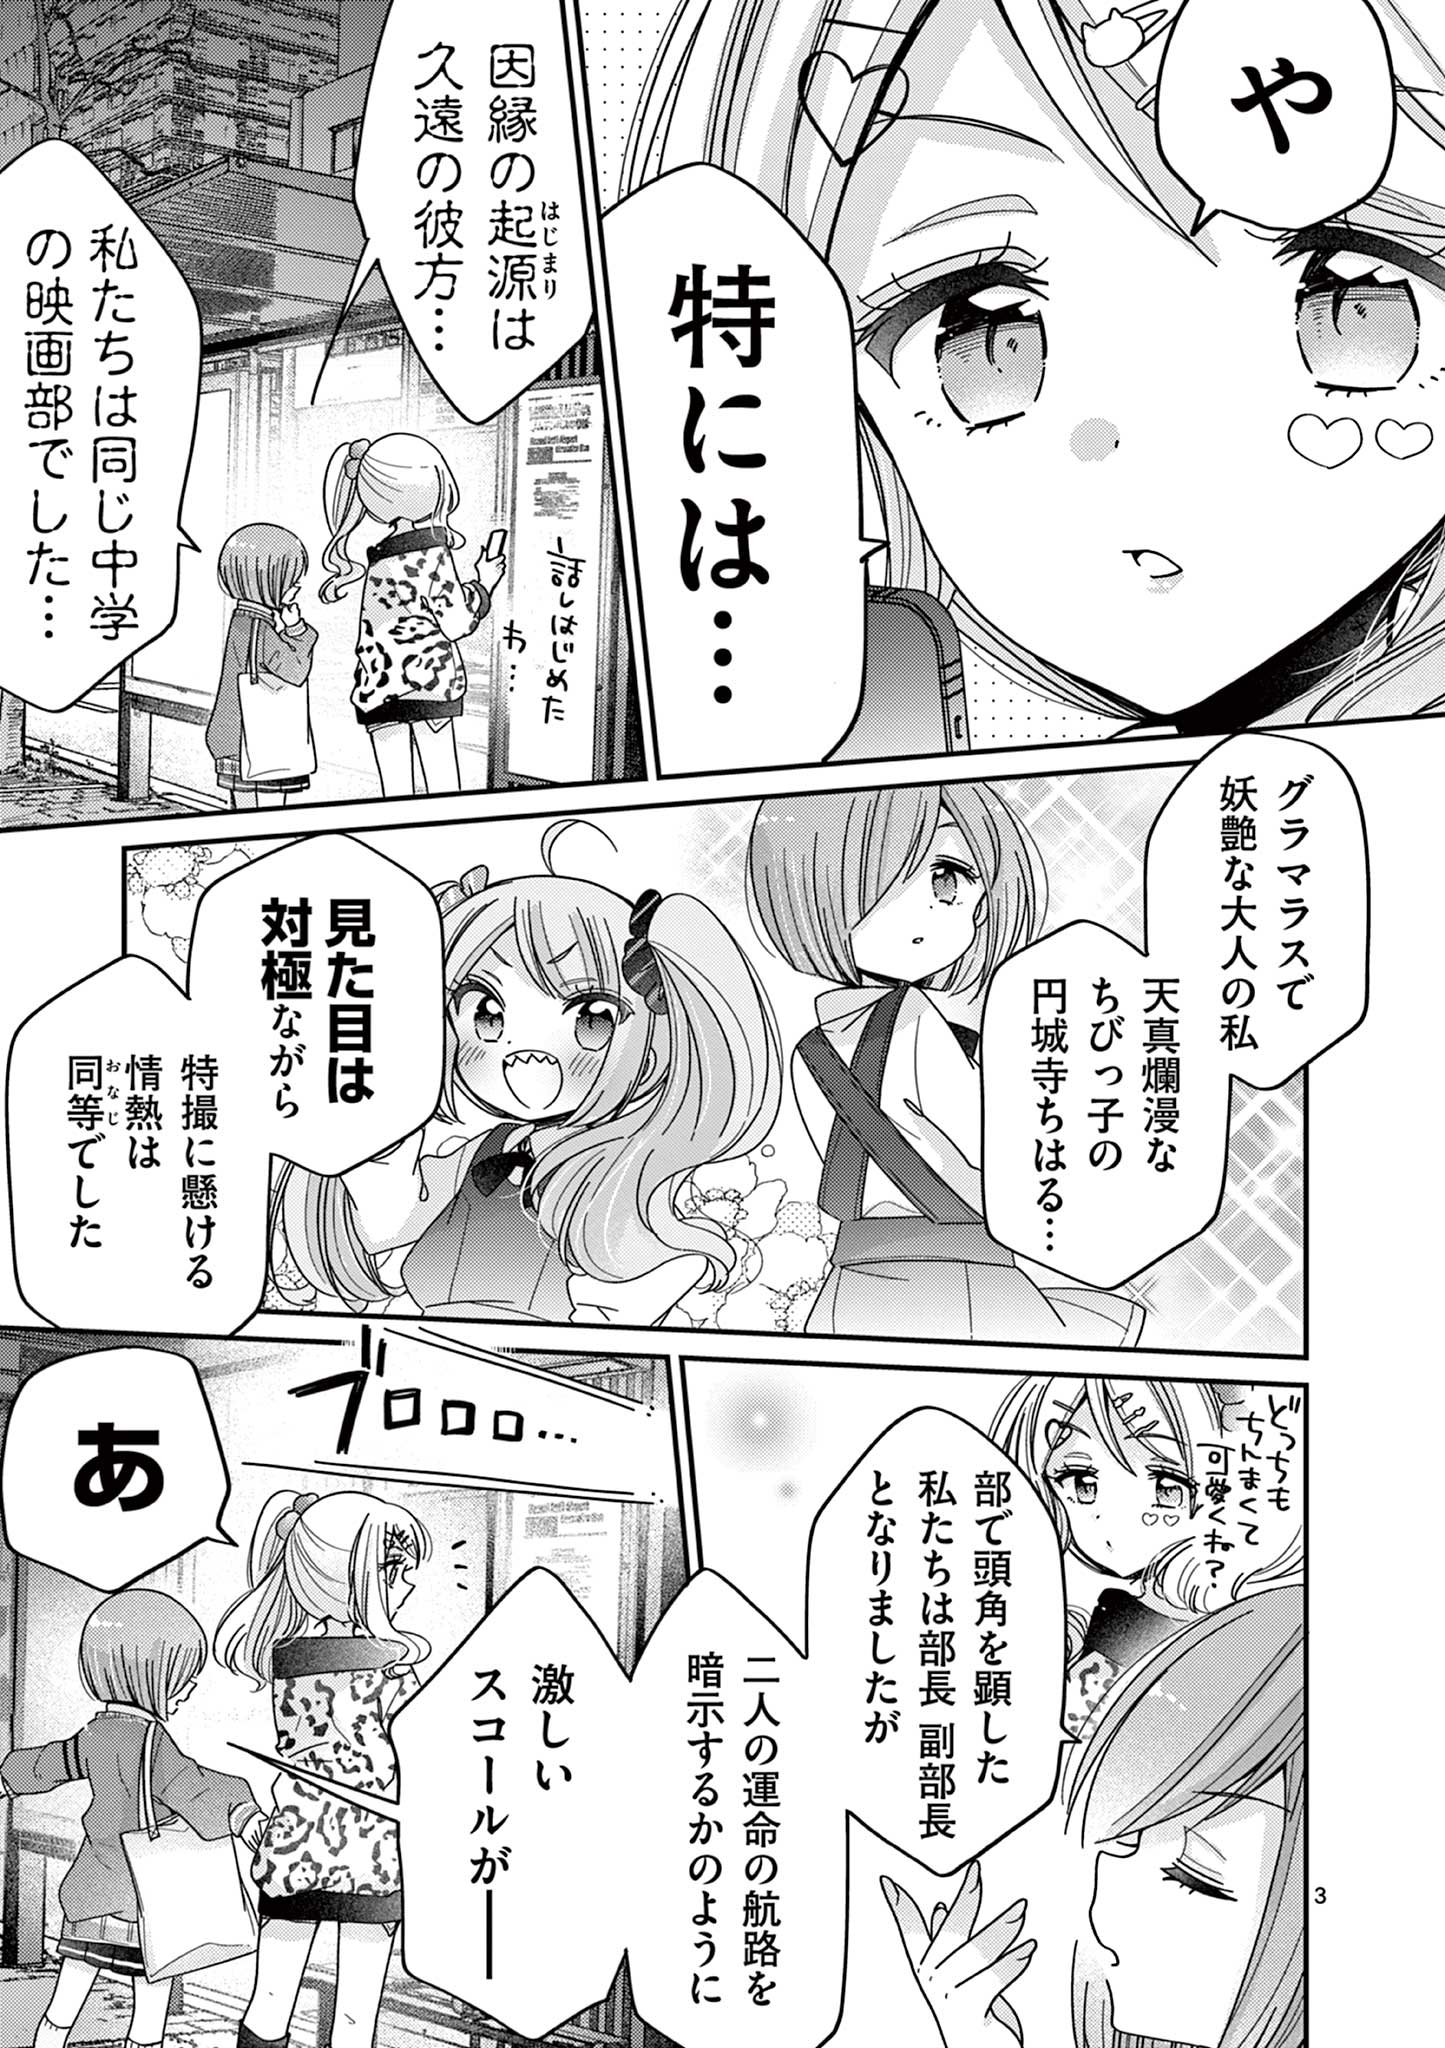 Kimi Toku!! – Kimi ni mo Tokusatsu Eiga ga Toreru!! - Chapter 22 - Page 3